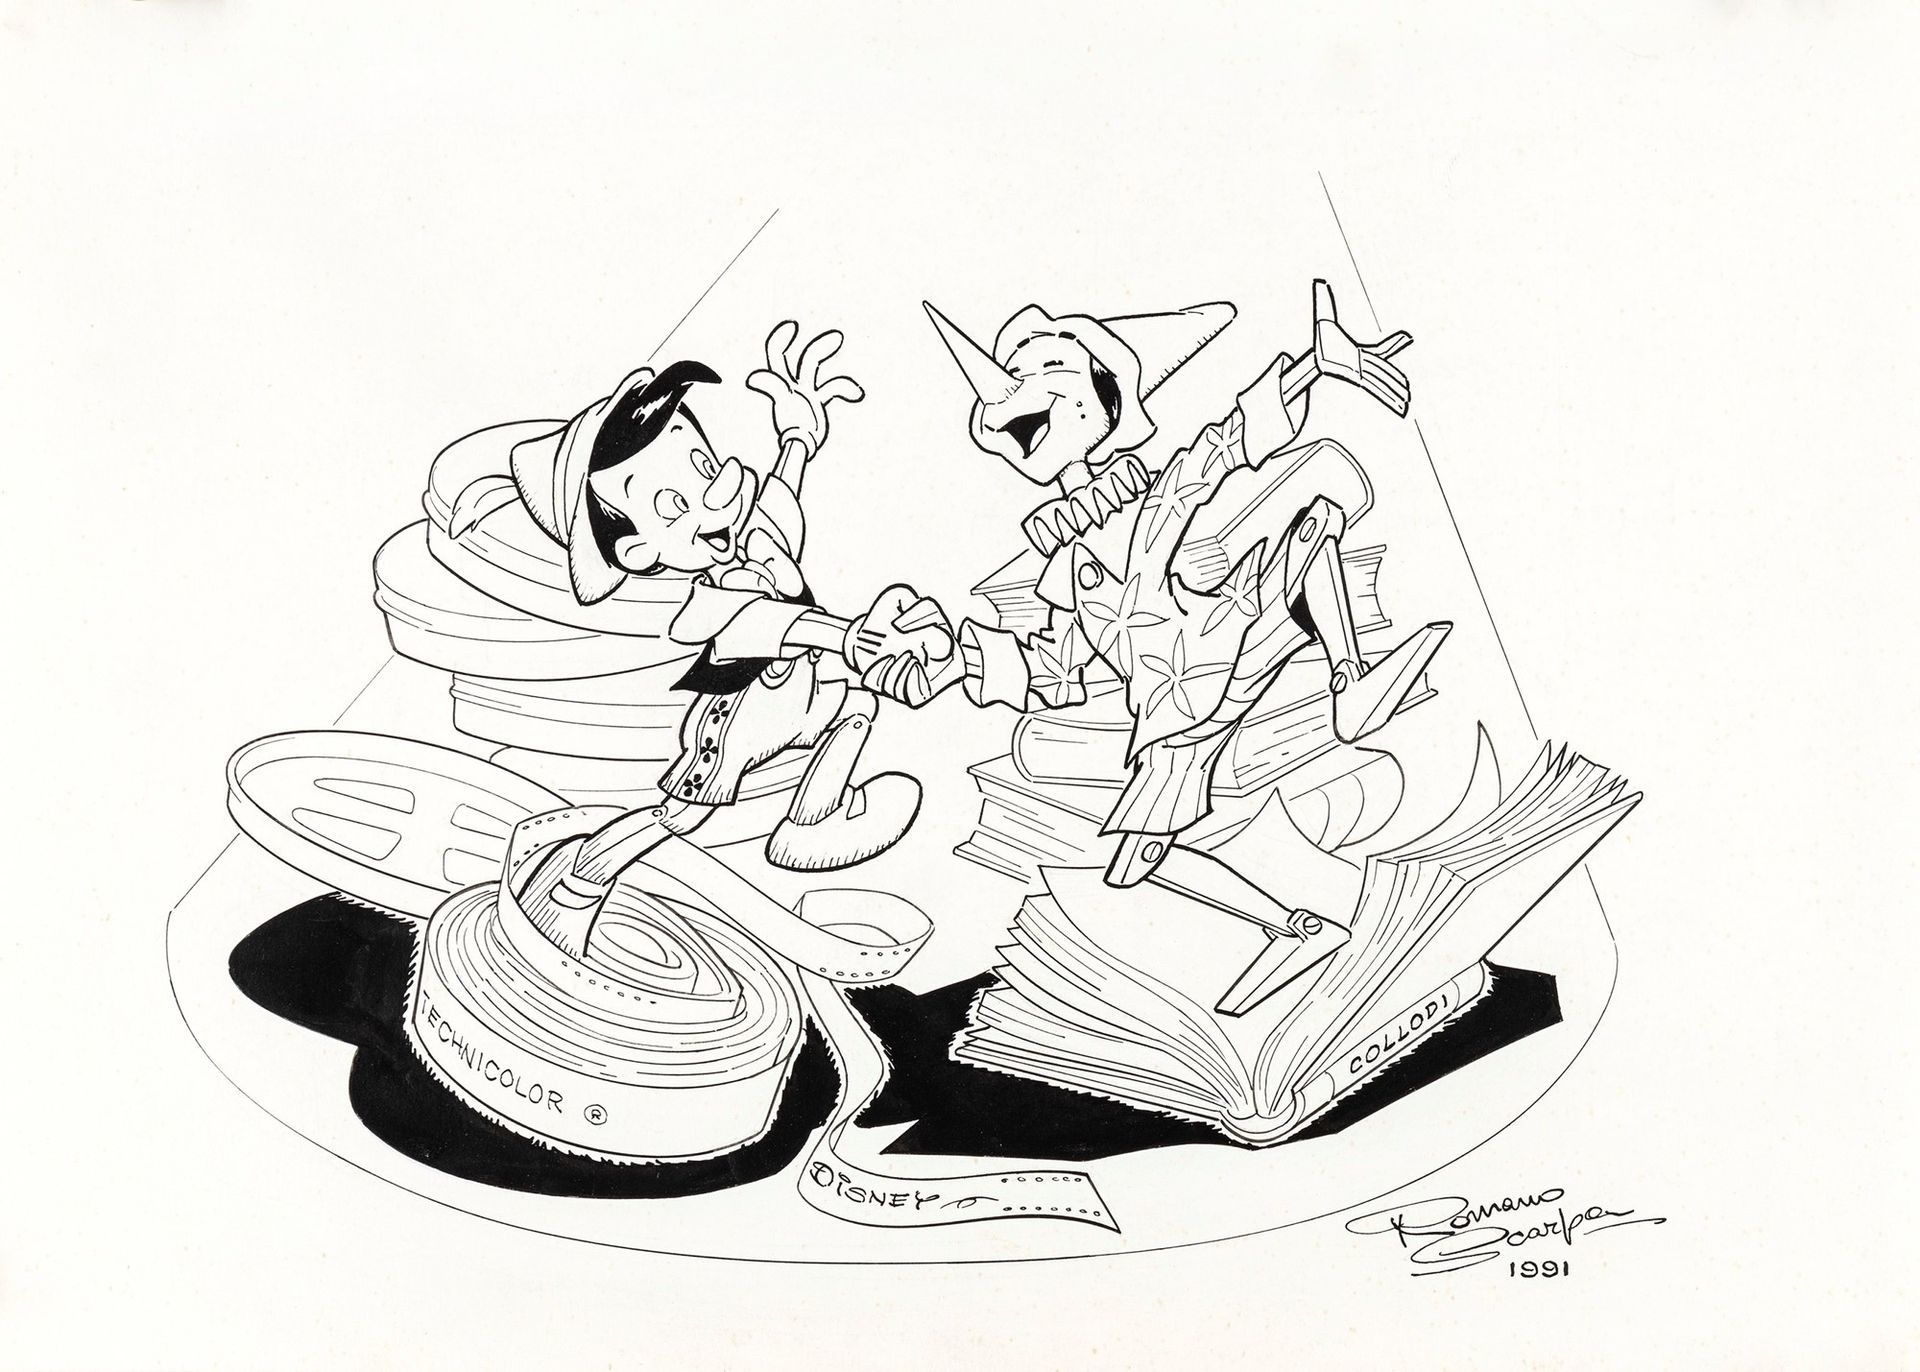 ROMANO SCARPA Il Pinocchio di Collodi e Disney, 1991

lápiz y tinta sobre cartón&hellip;